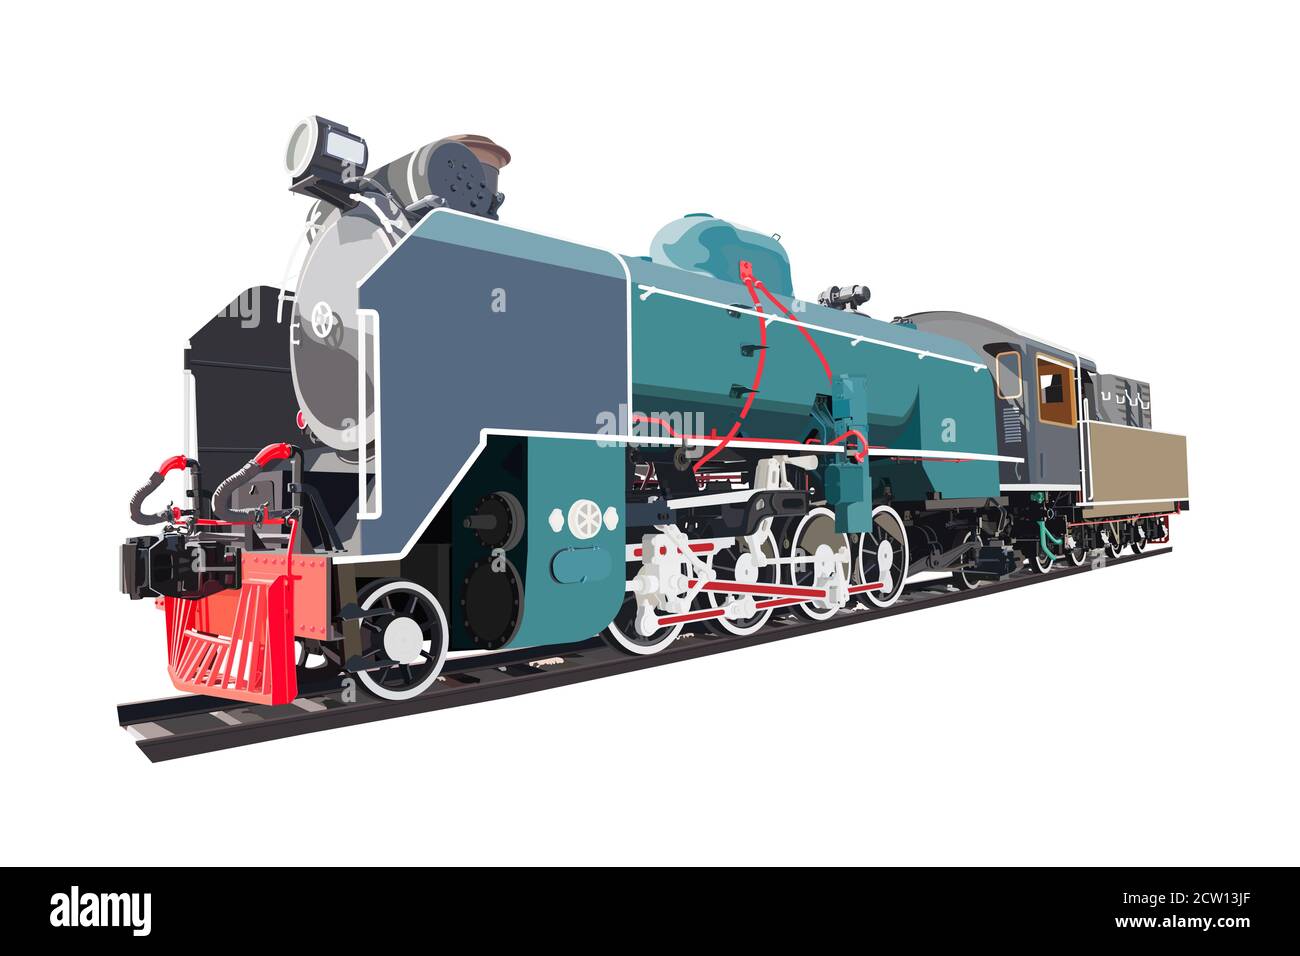 Dampflokomotive Transport, Vintage-Zug, isoliert auf weißem Hintergrund. vektor-Illustration. Stock Vektor